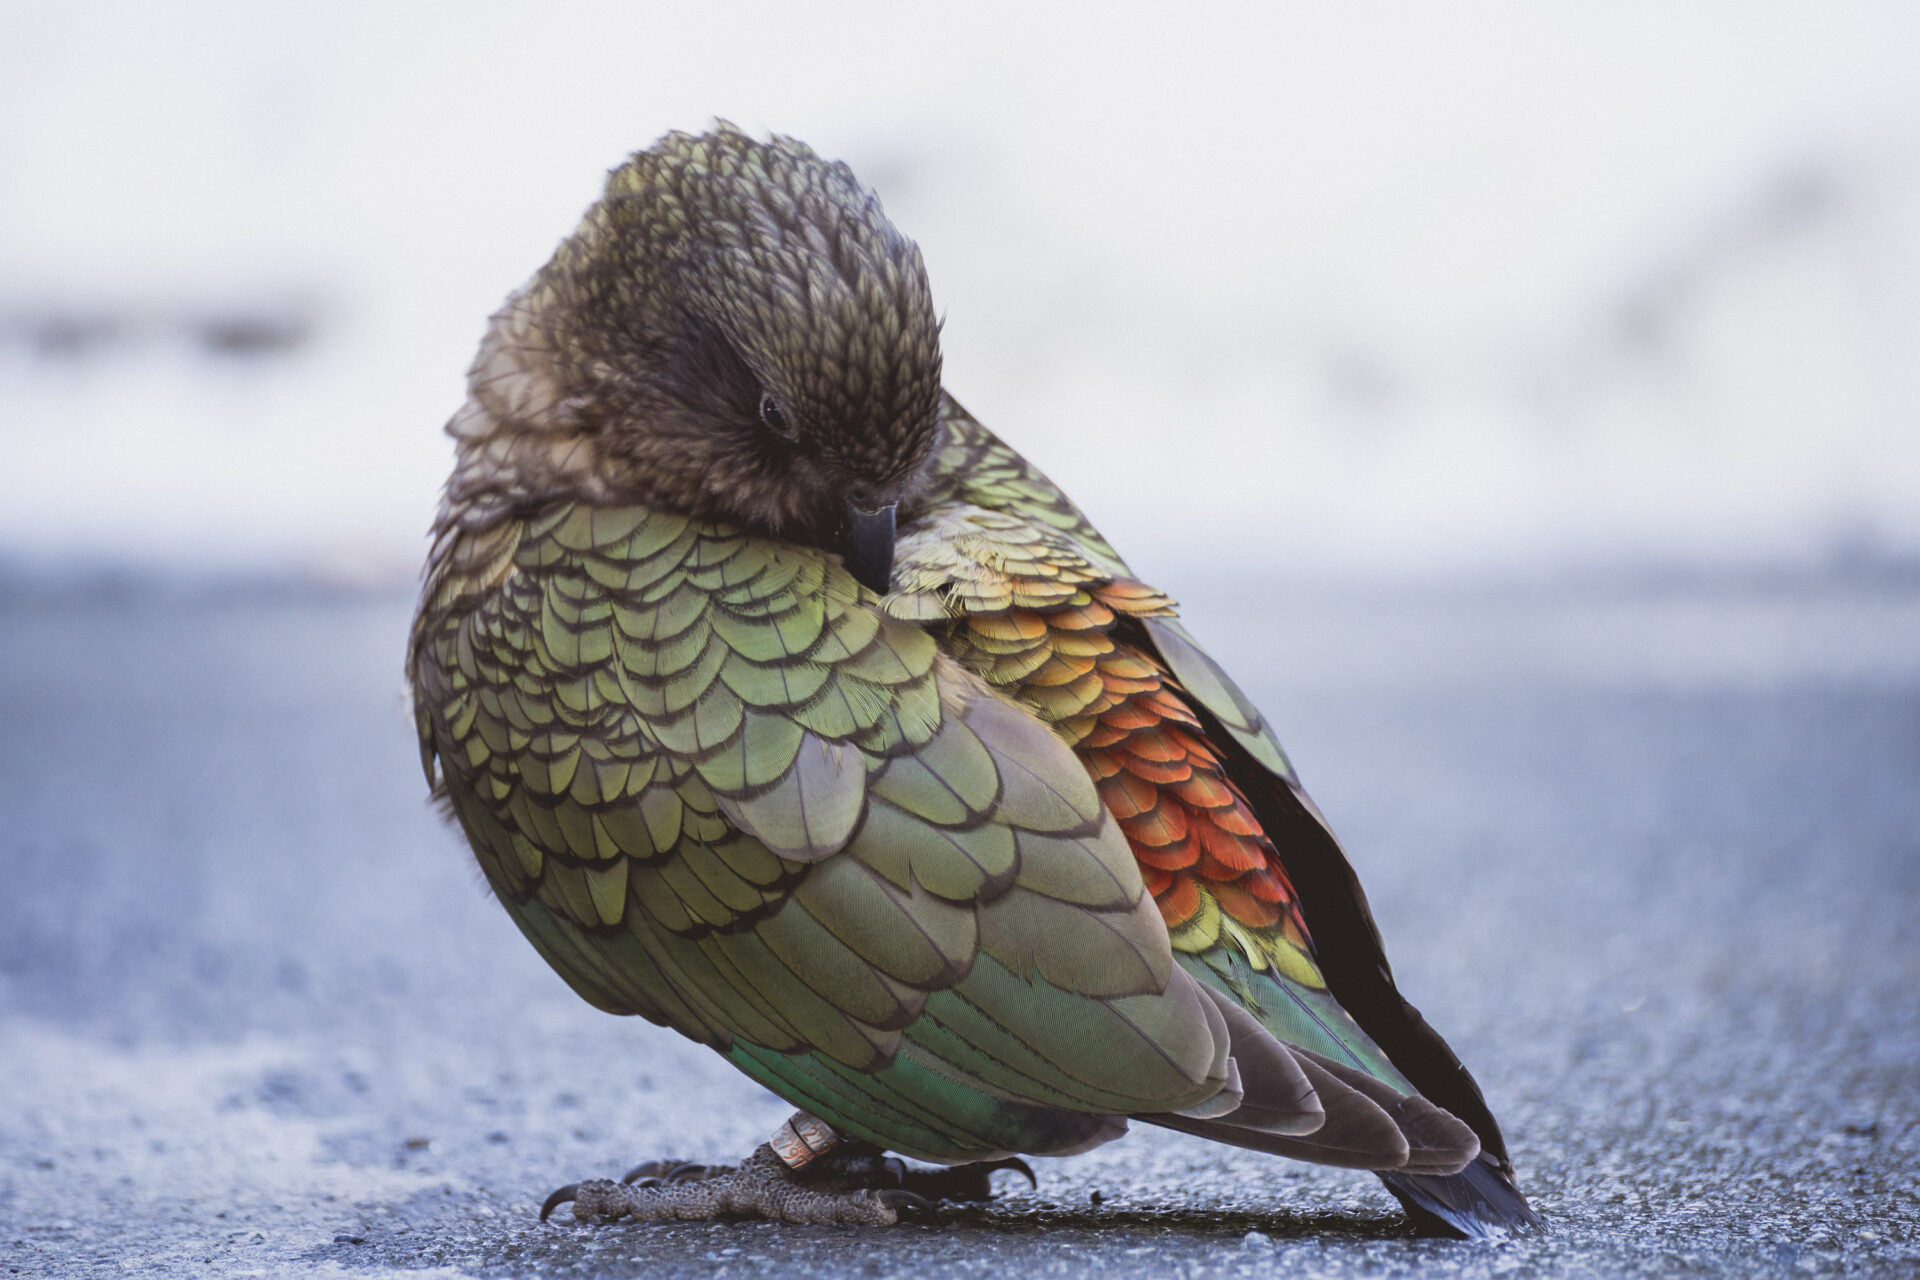 Kea Vogel mit grünen, gelben und orangenen Federn